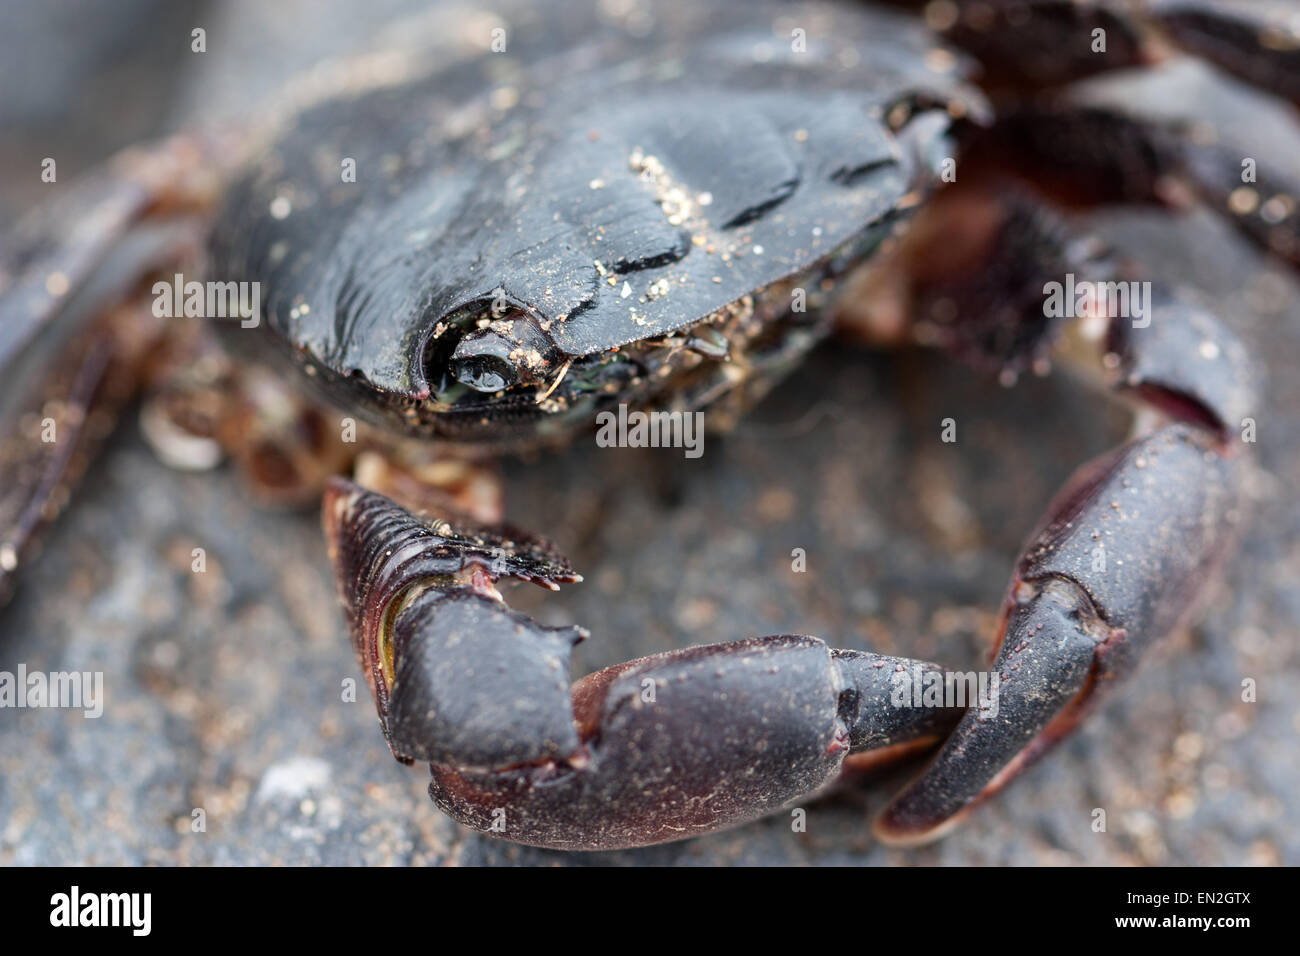 Plan Macro sur un crabe de l'Atlantique Banque D'Images